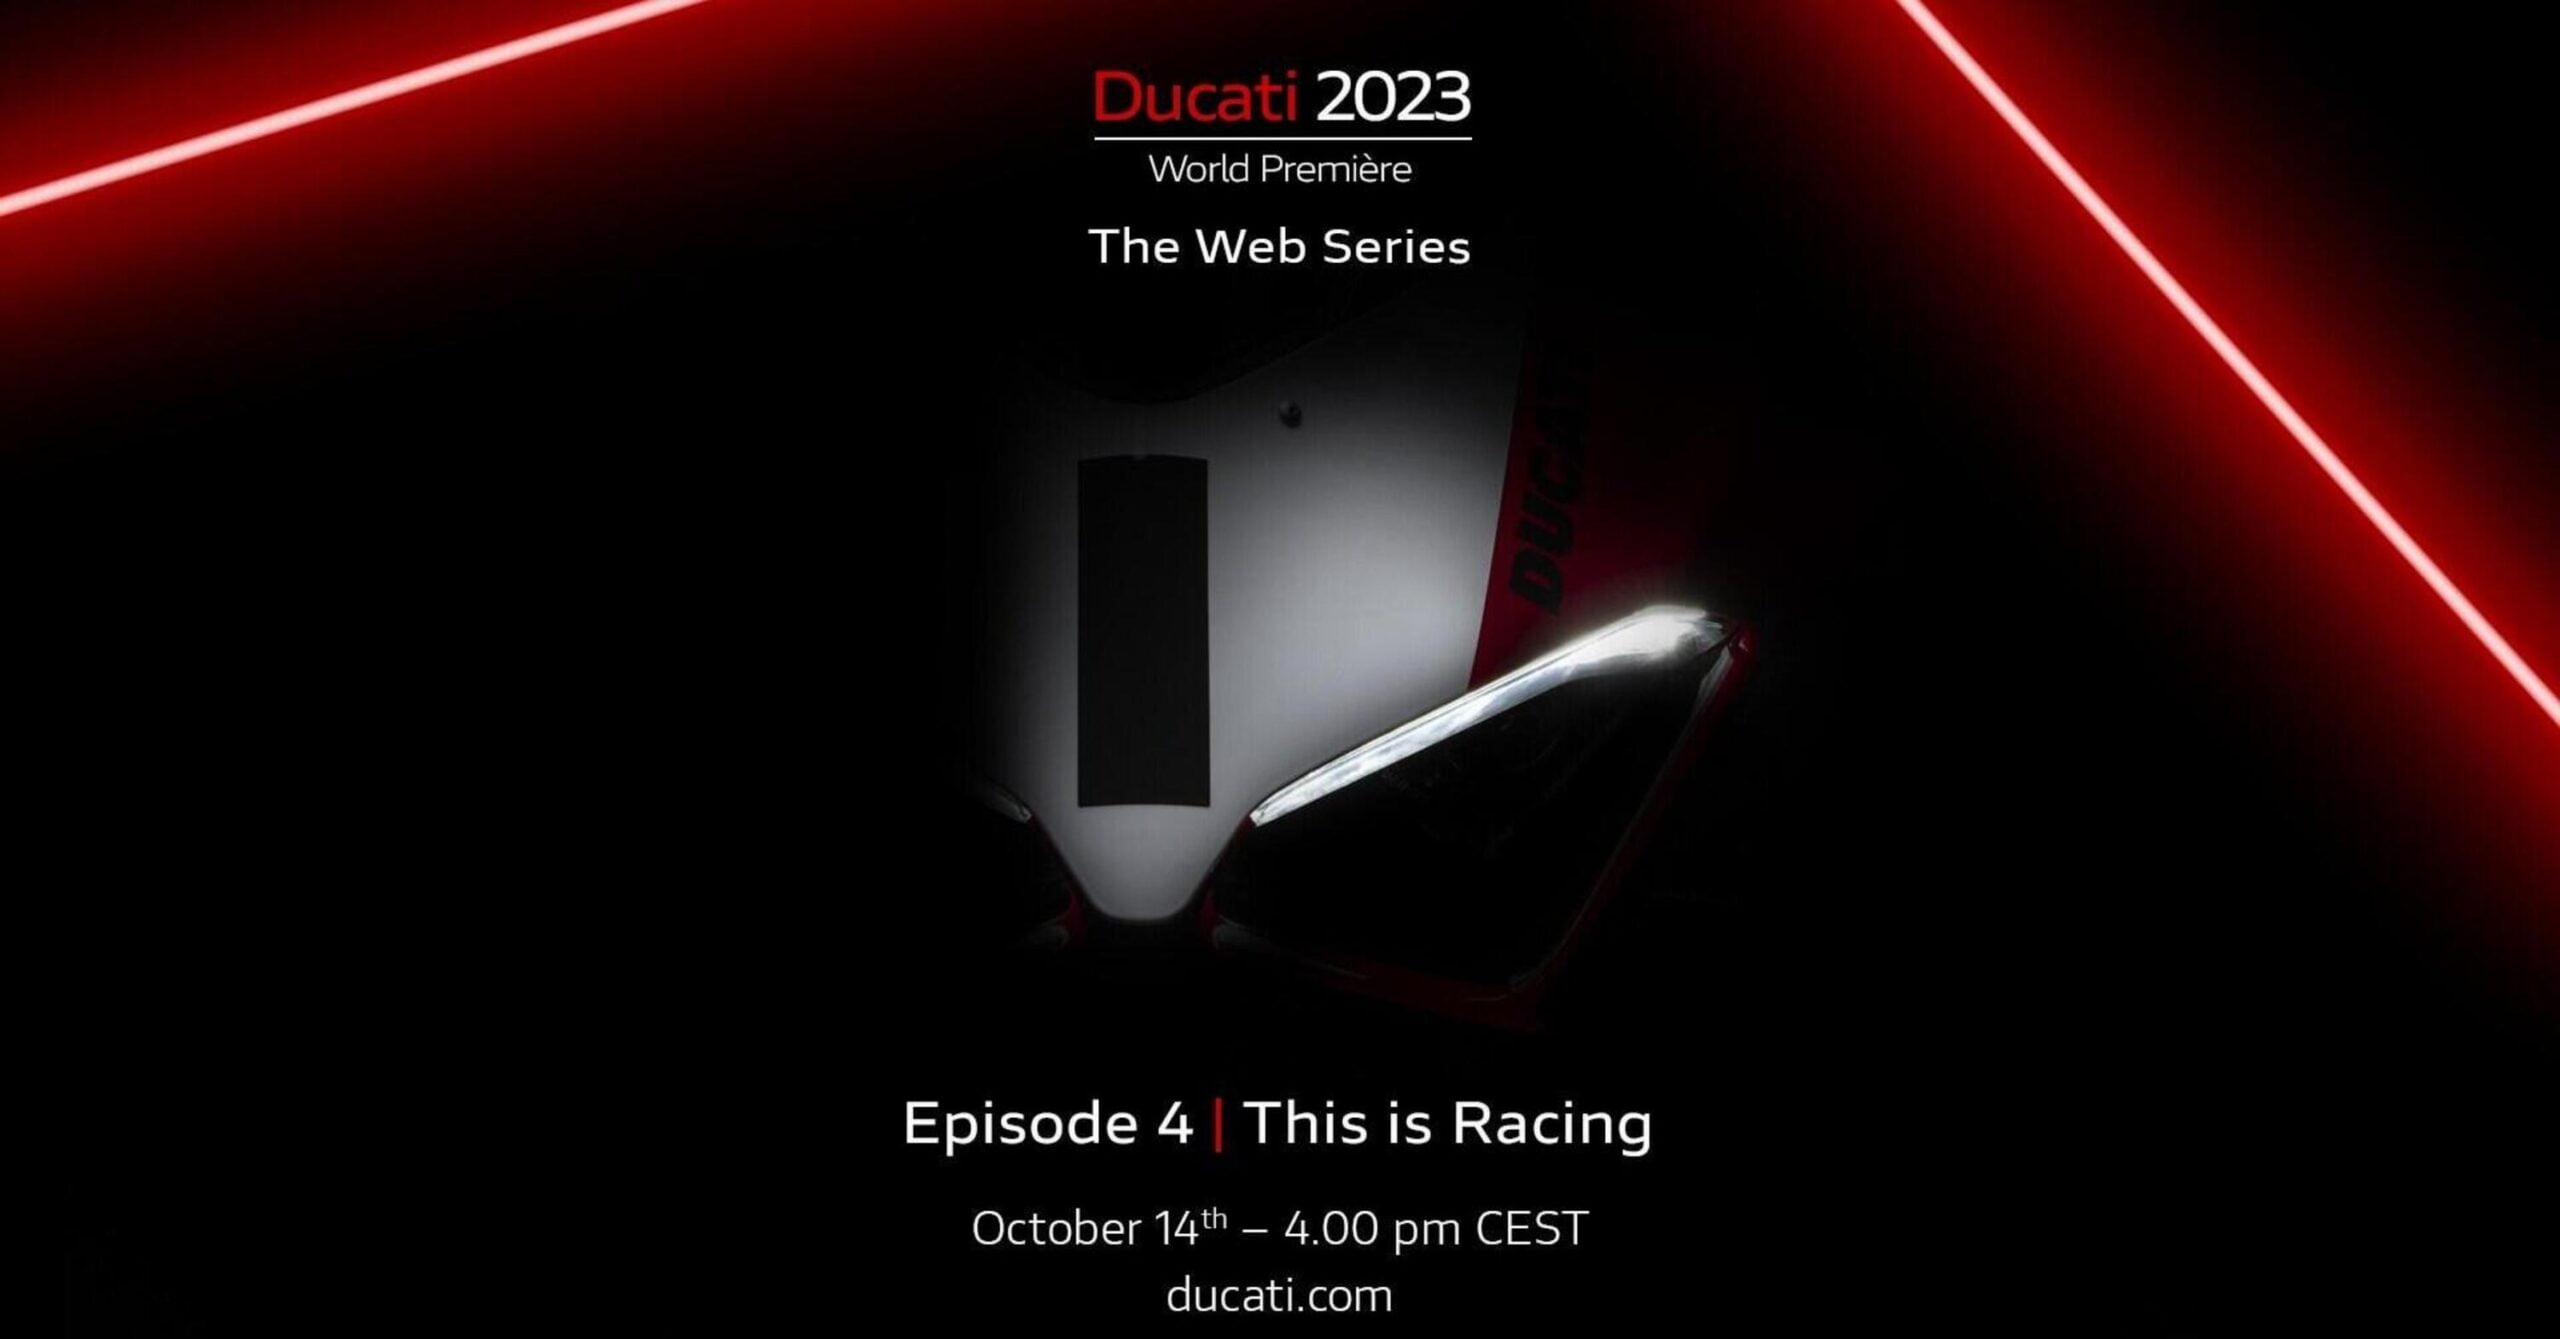 [Rua] A Ducati remarcou o episódio 4 de sua estreia mundial, e hoje descobrimos algumas novidades esportivas!